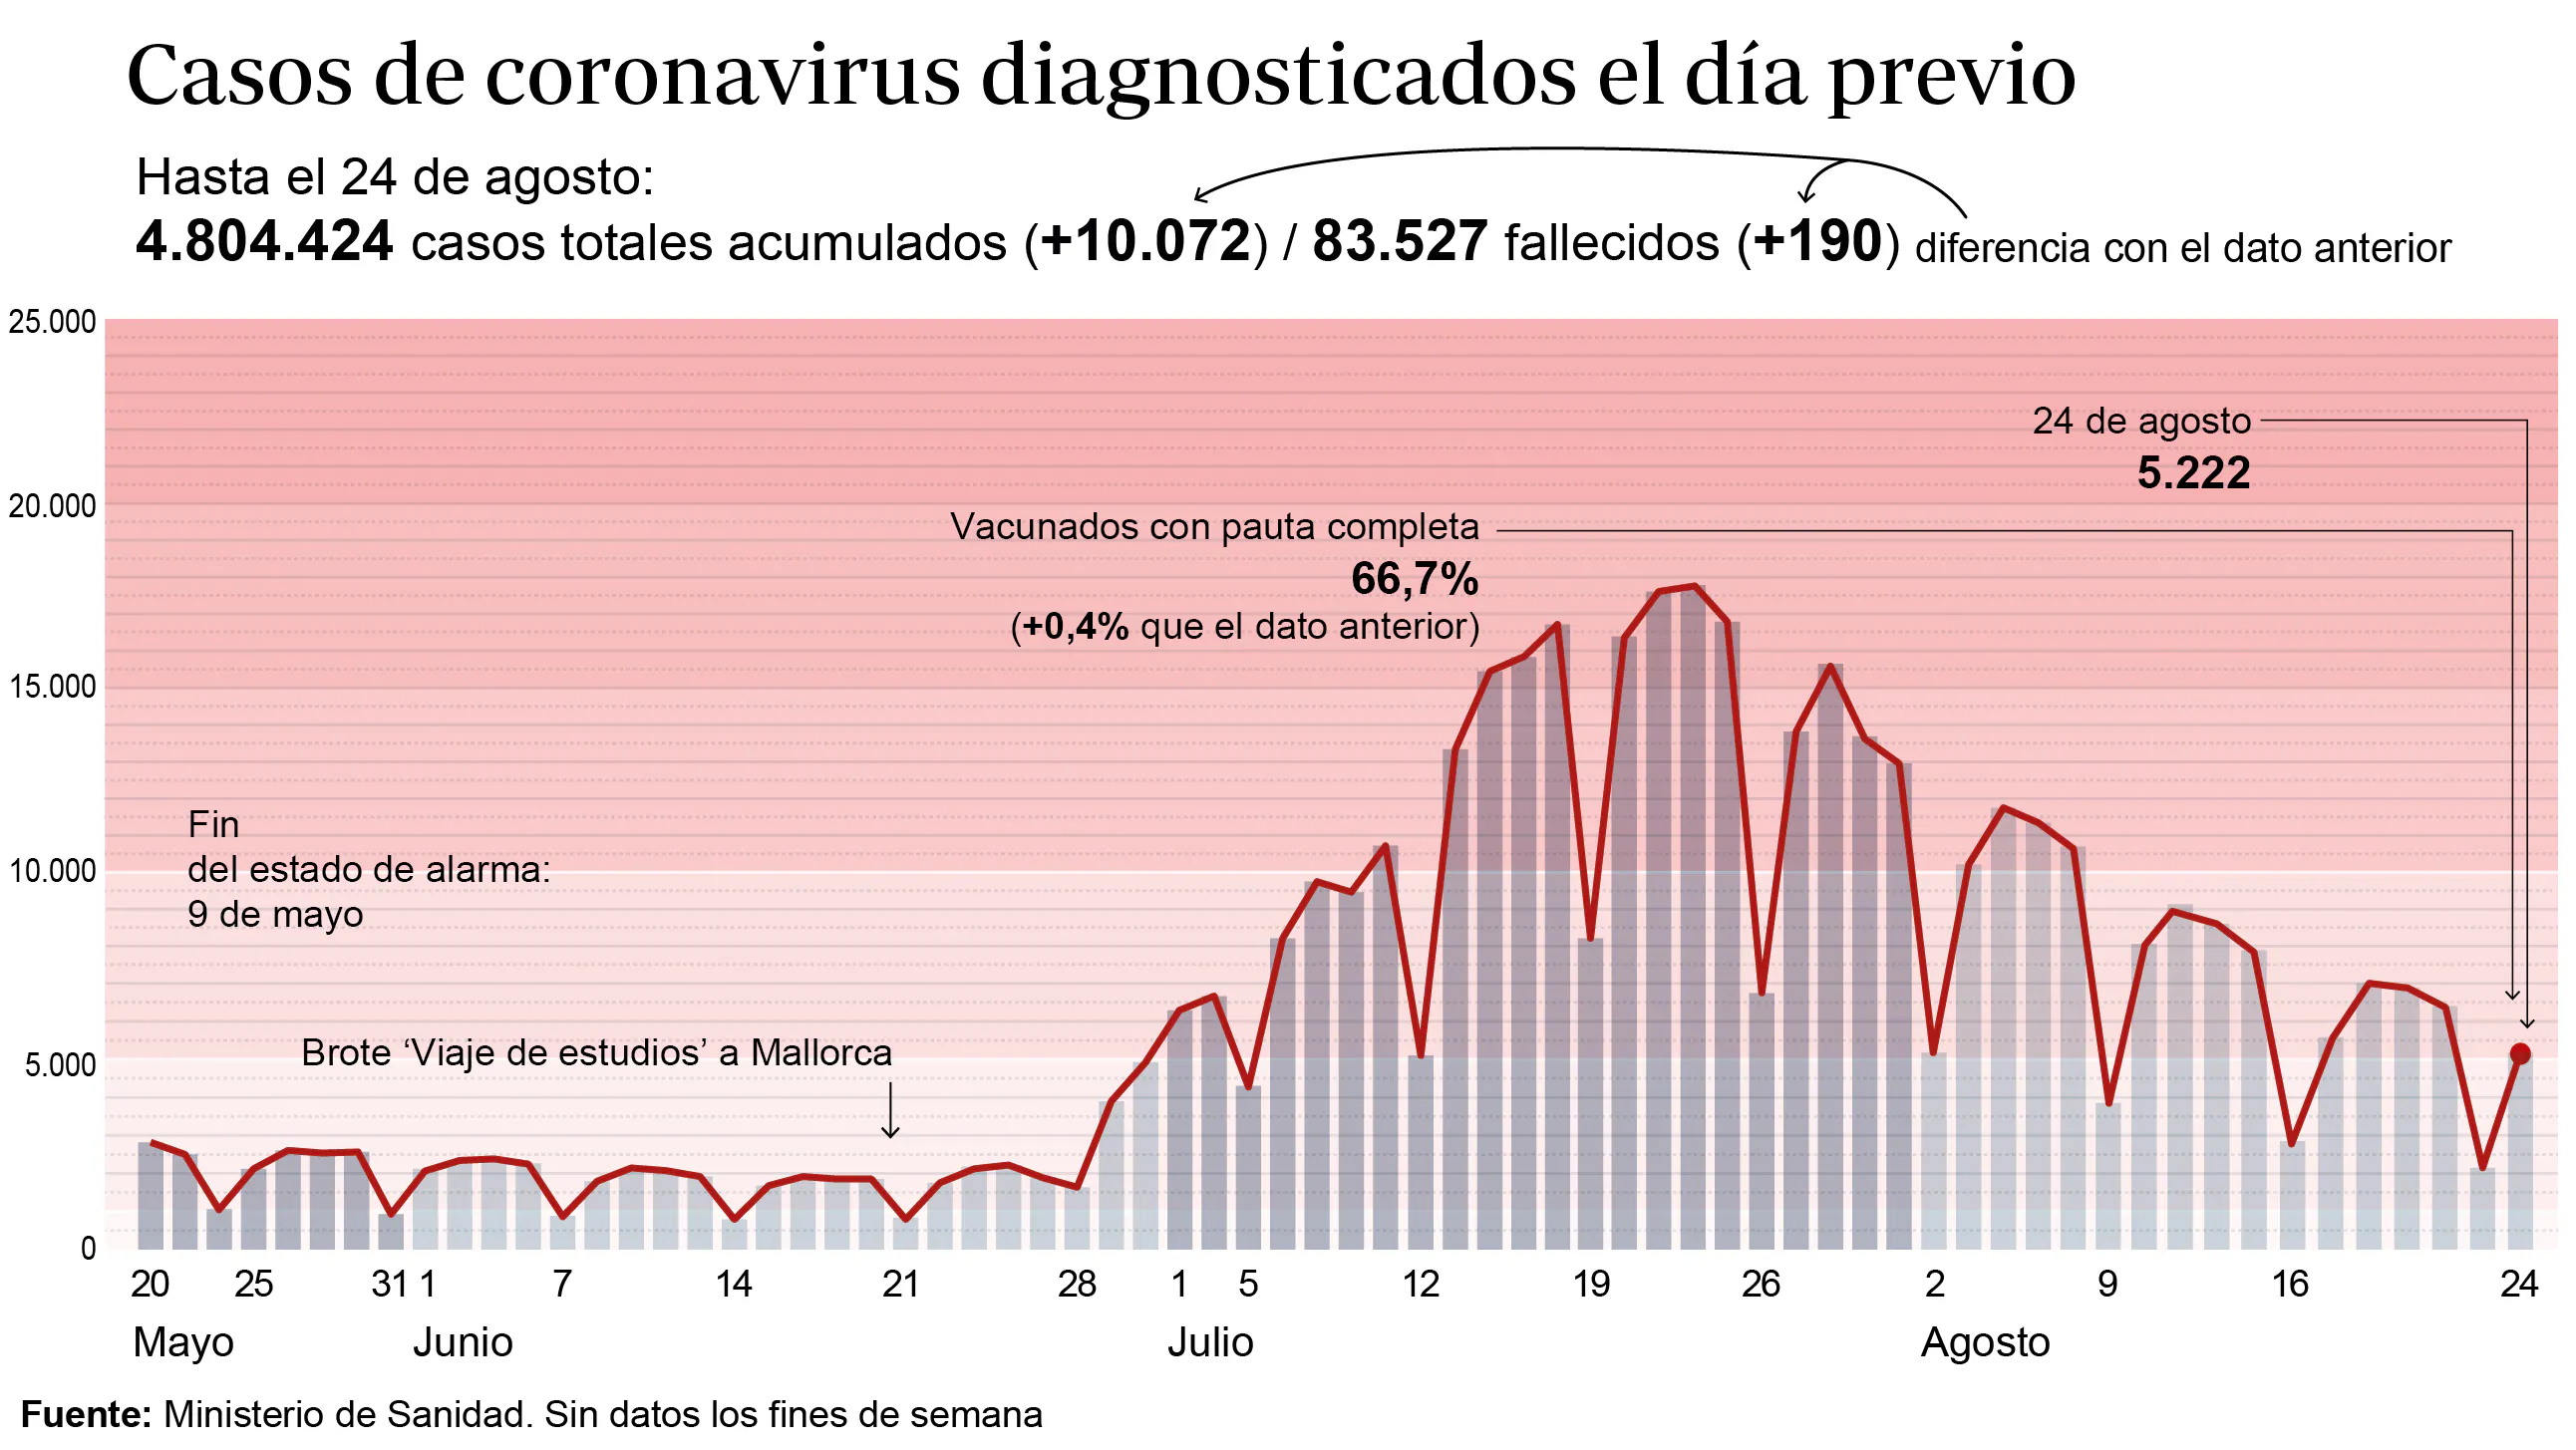 Gráfico que muestra la evolución de la pandemia en España